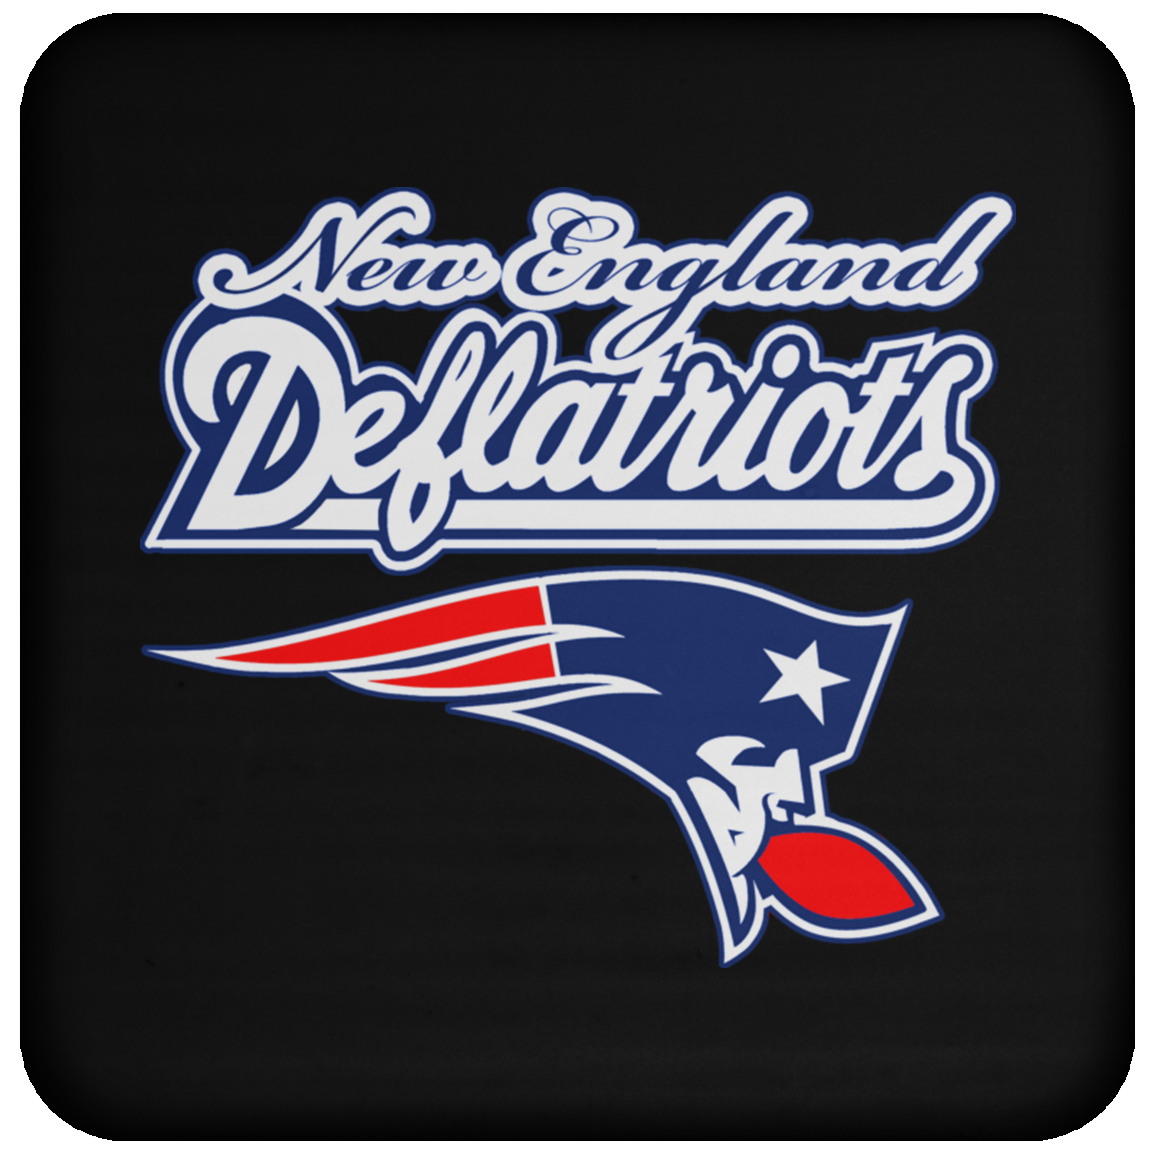 ArtichokeUSA Custom Design. New England Deflatriots. New England Patriots Parody. Coaster